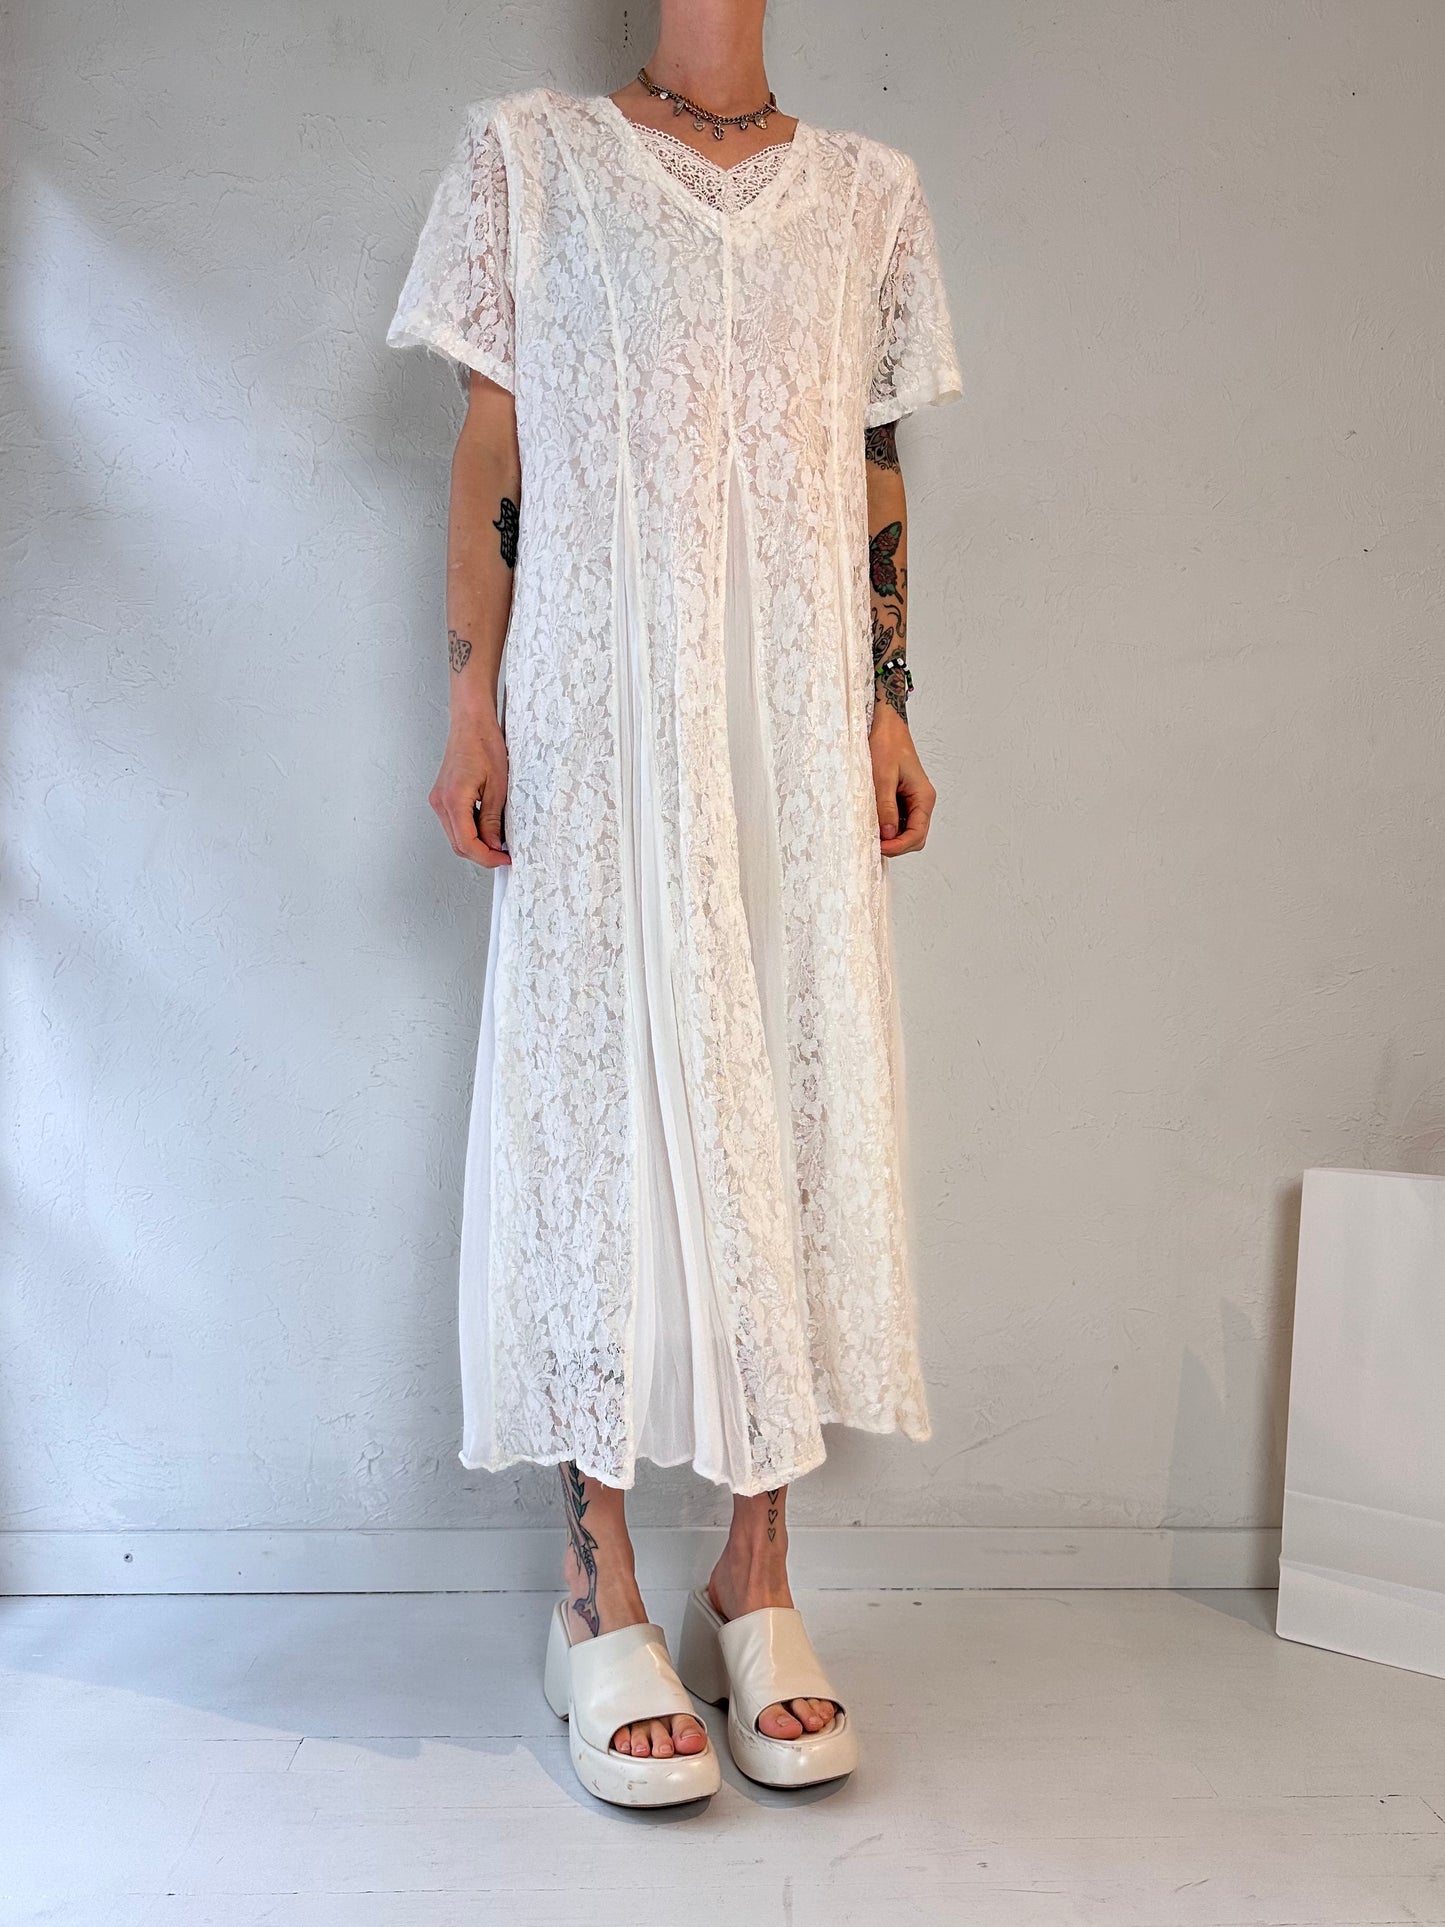 90s 'Nostalgia' White Lace Dress / Large